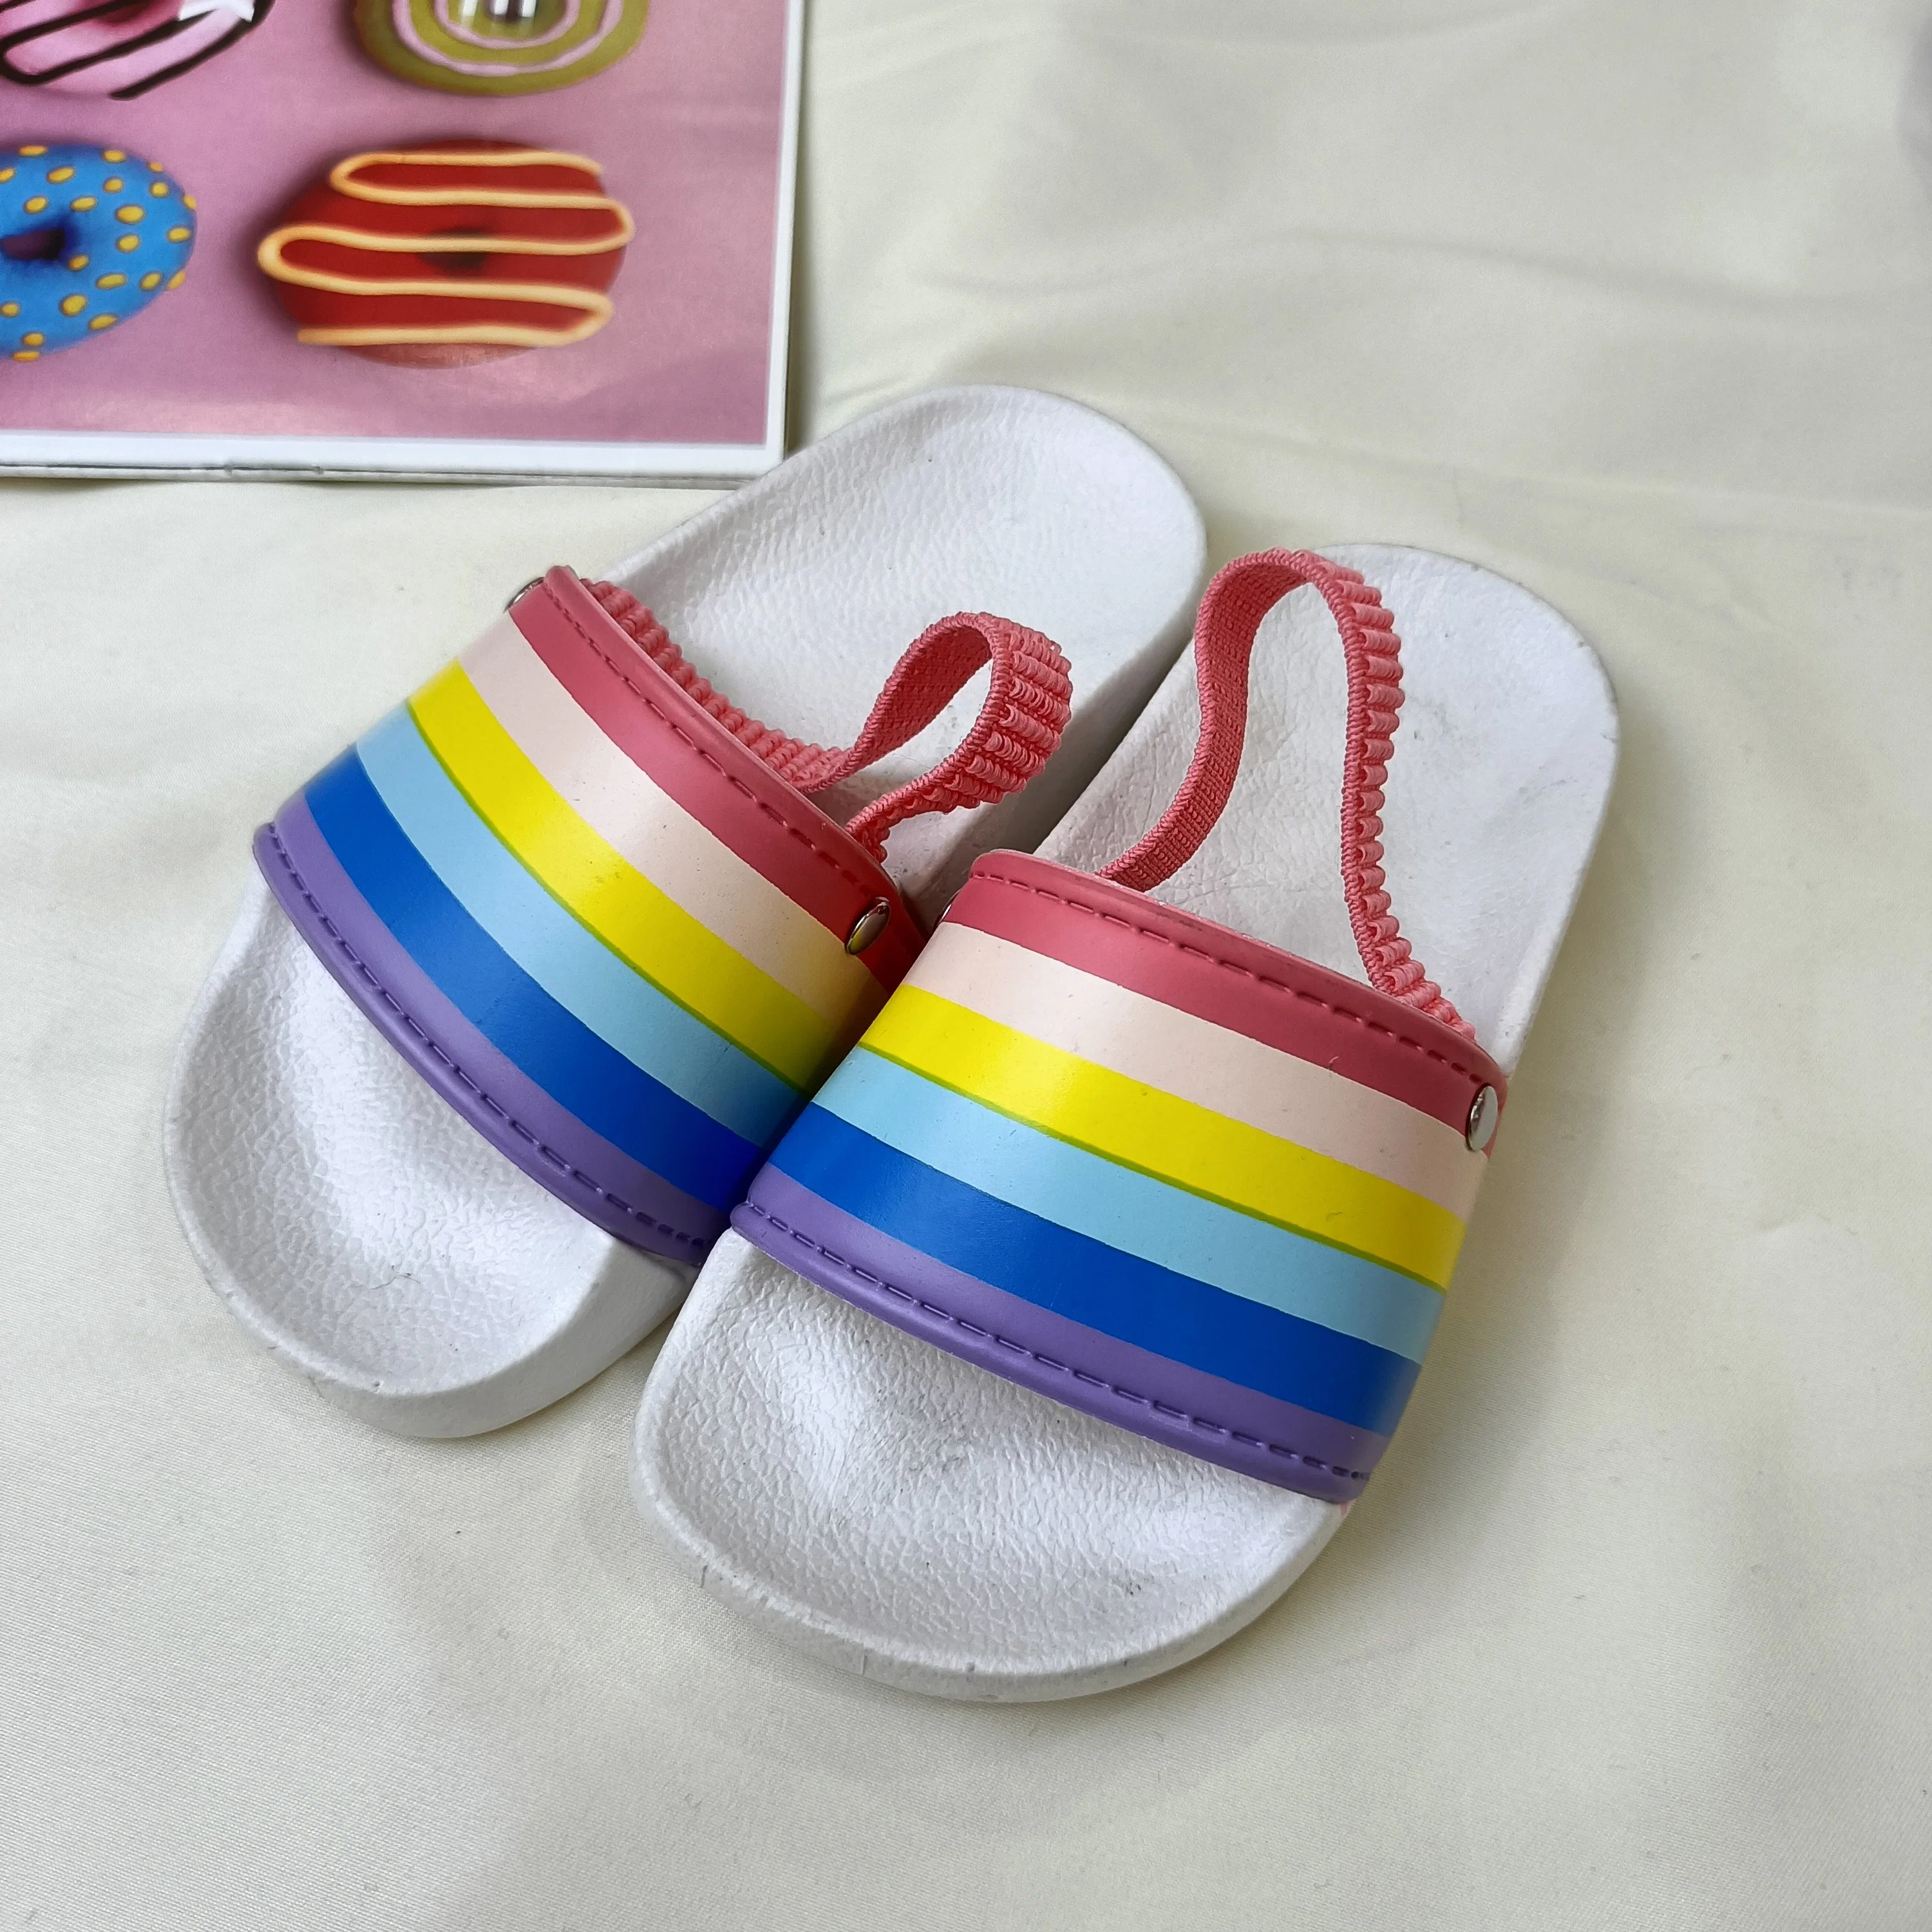 Детские сандалии Slippers Slides плоские сандалии Baby Rainbow полоски сандалии Новое лето для детских сандалий